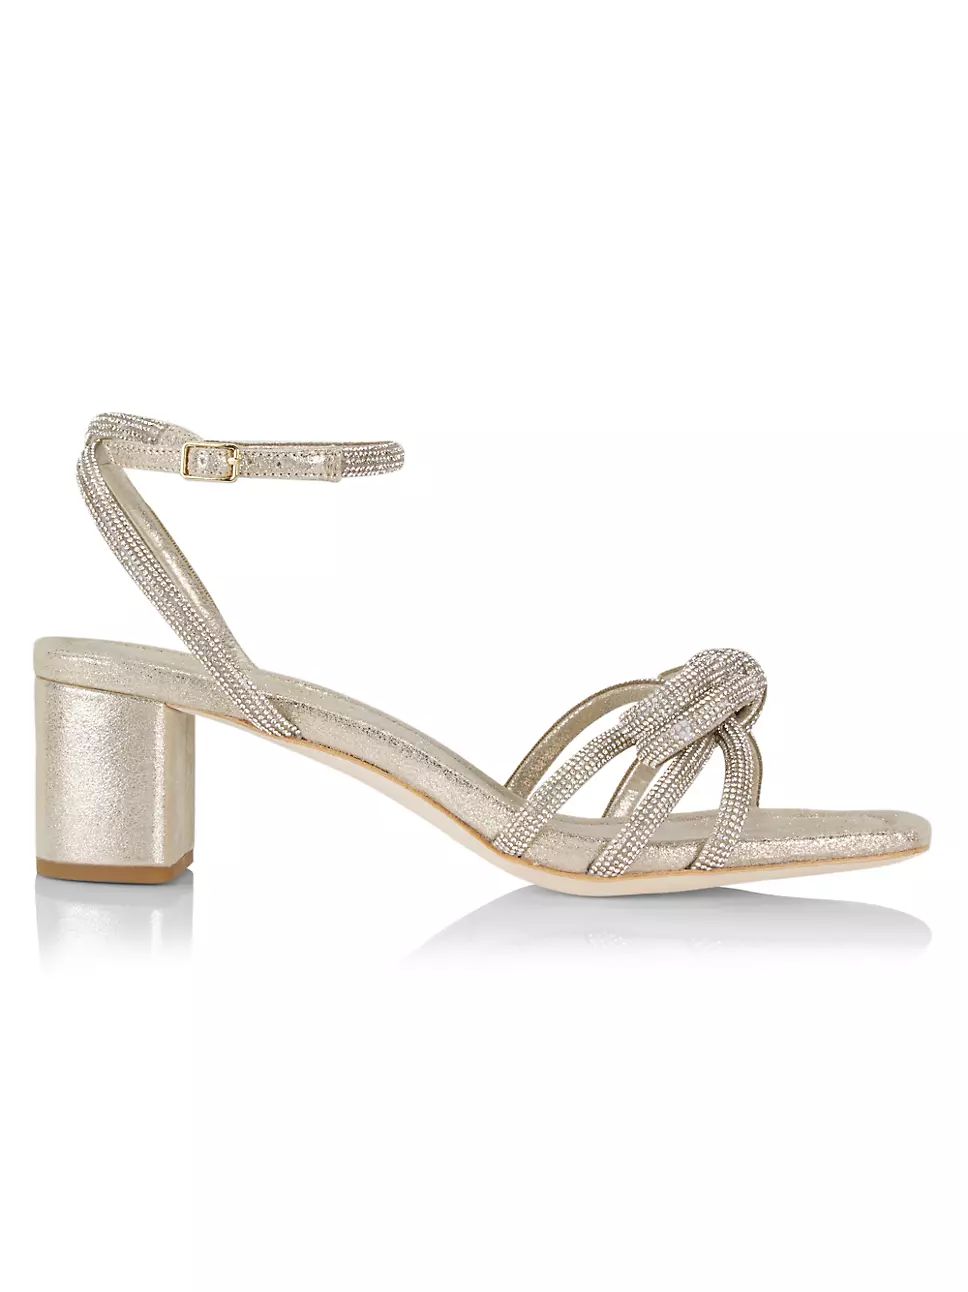 Loeffler Randall Mikel Crystal-Embellished Suede Sandals | Saks Fifth Avenue